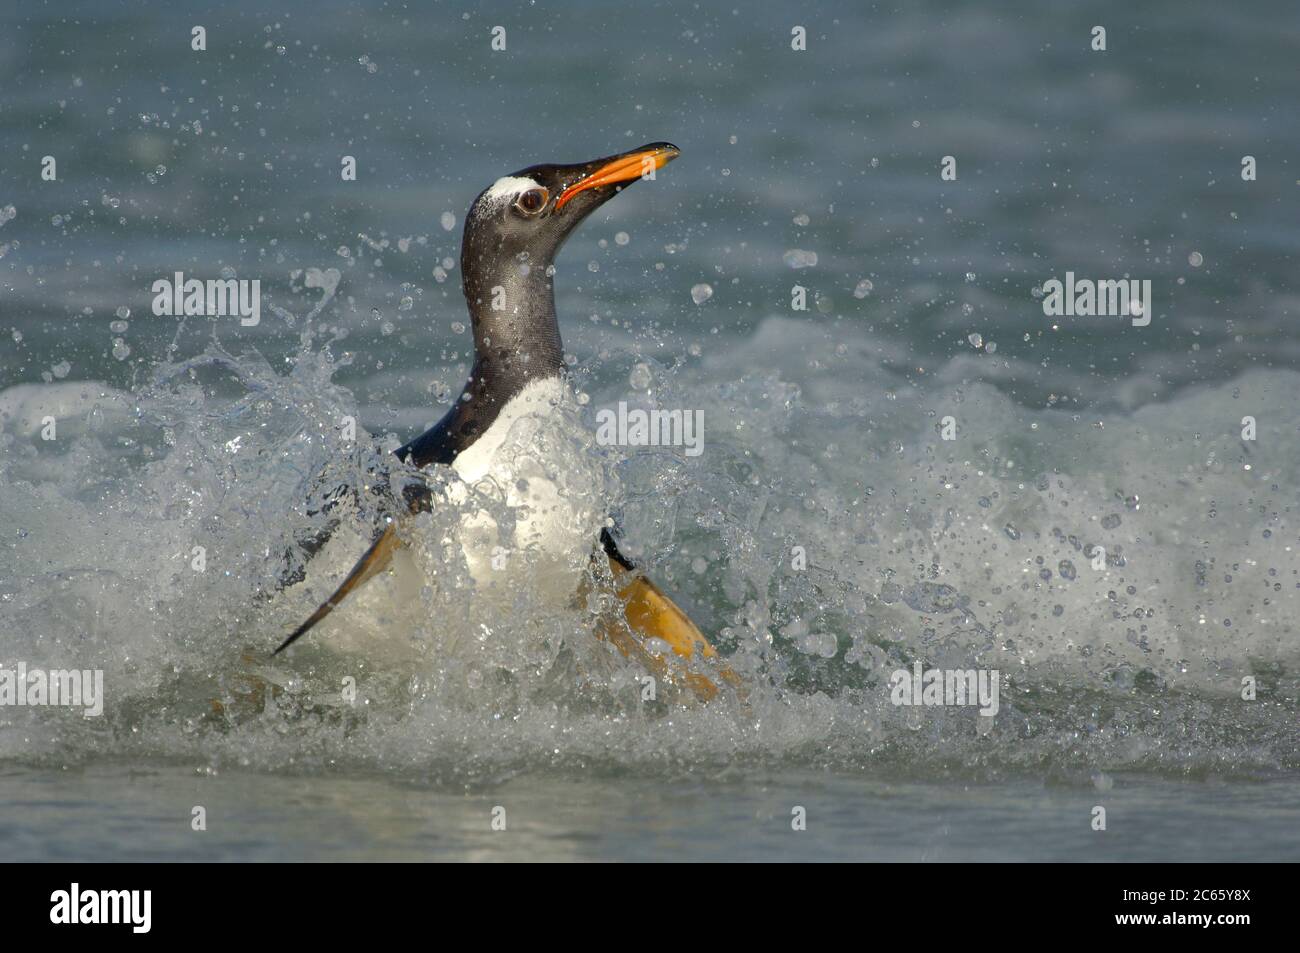 Atteindre la plage le Penguin Gentoo (Pygoscelis papouasie) doit passer de la position de natation horizontale à la position de marche verticale le plus rapidement possible. C'est un moment dangereux, car les lions de mer se cachent dans la ligne de surf. Banque D'Images